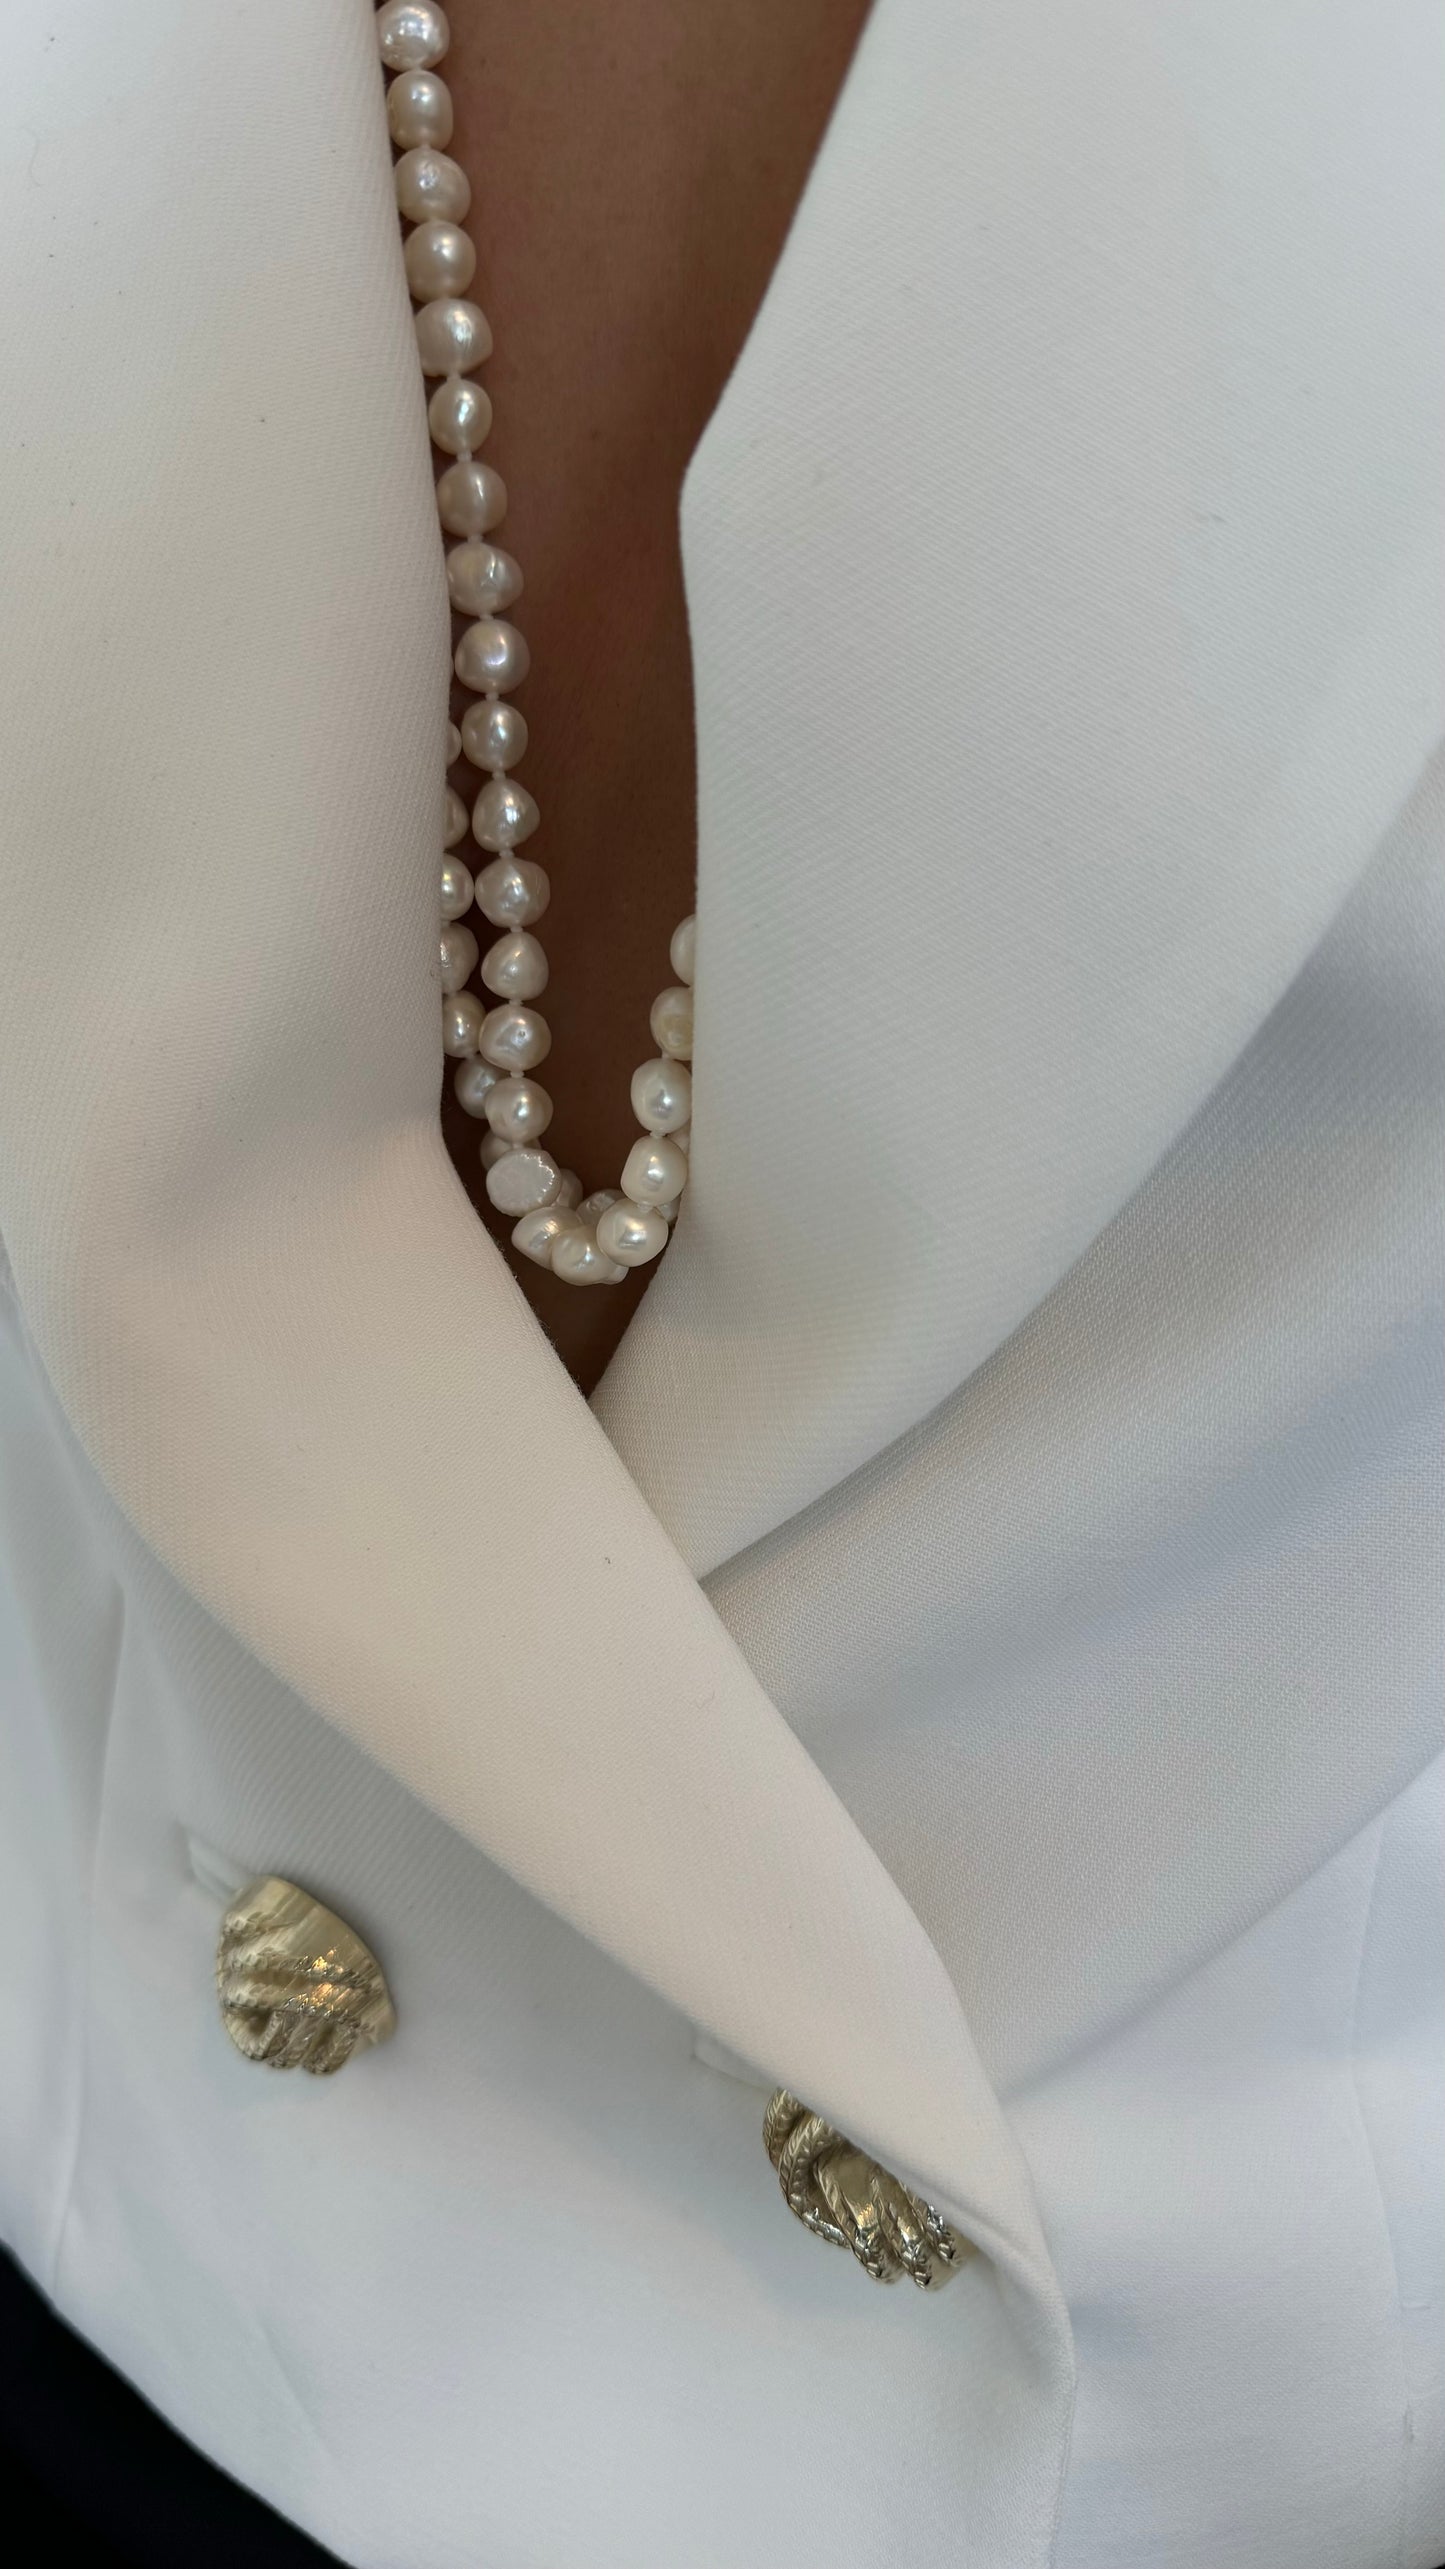 Nicola pearl necklace